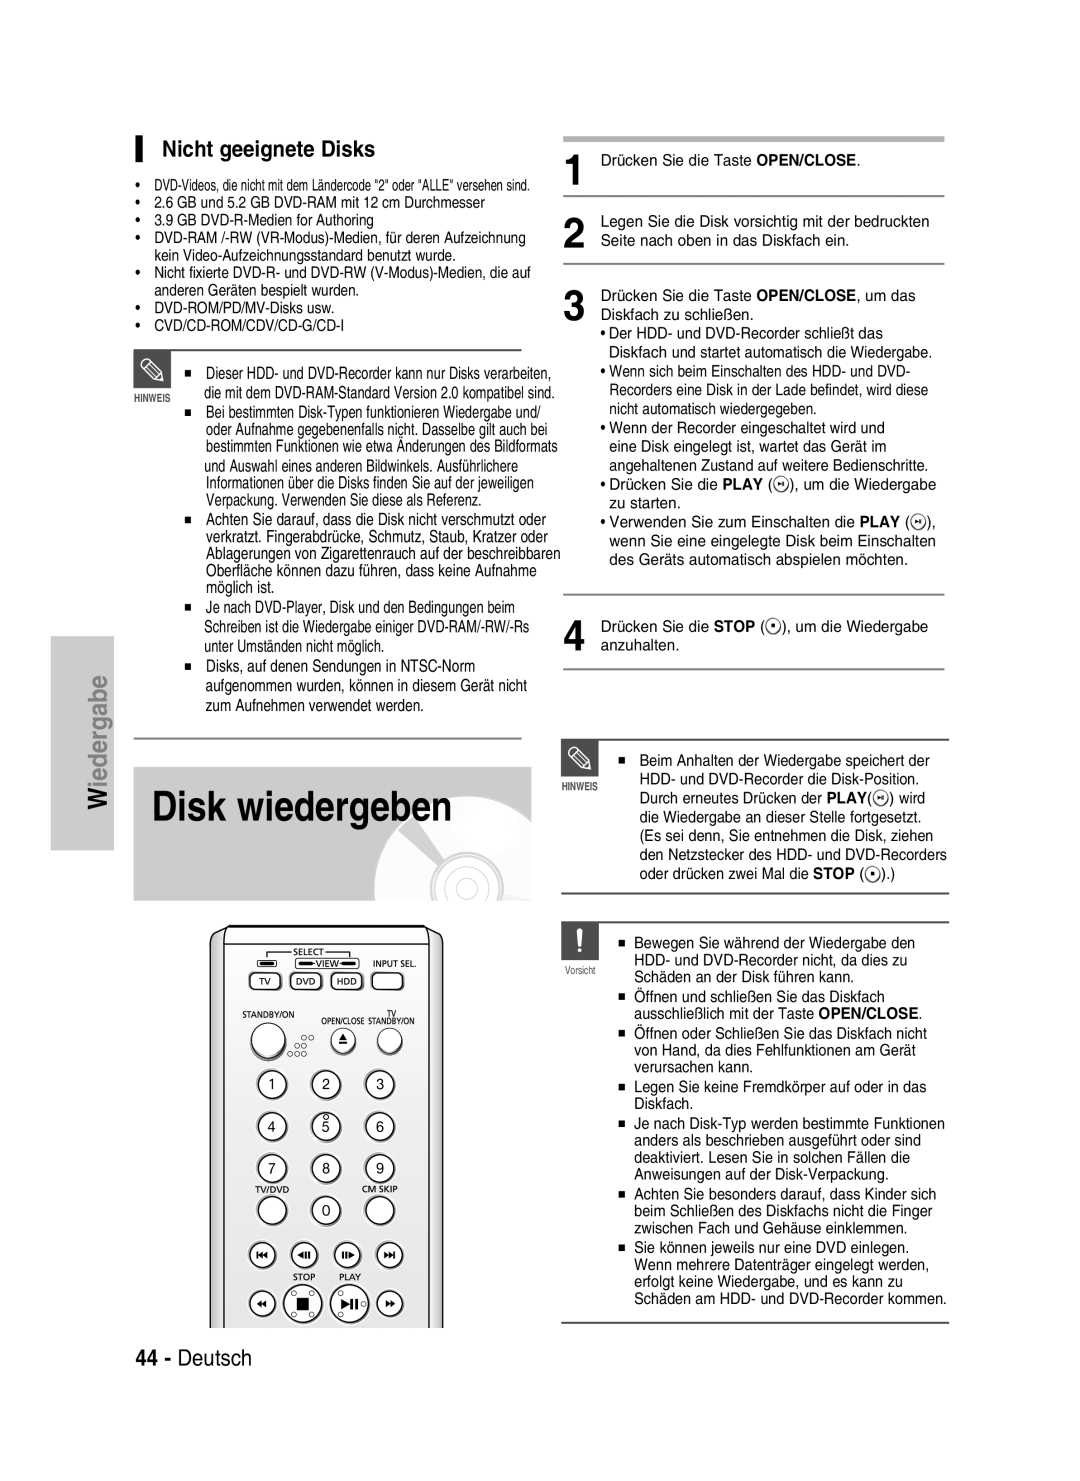 Samsung DVD-HR730/XEC, DVD-HR730/XEB, DVD-HR734/XEG manual Disk wiedergeben, Nicht geeignete Disks, Deutsch, Wiedergabe 